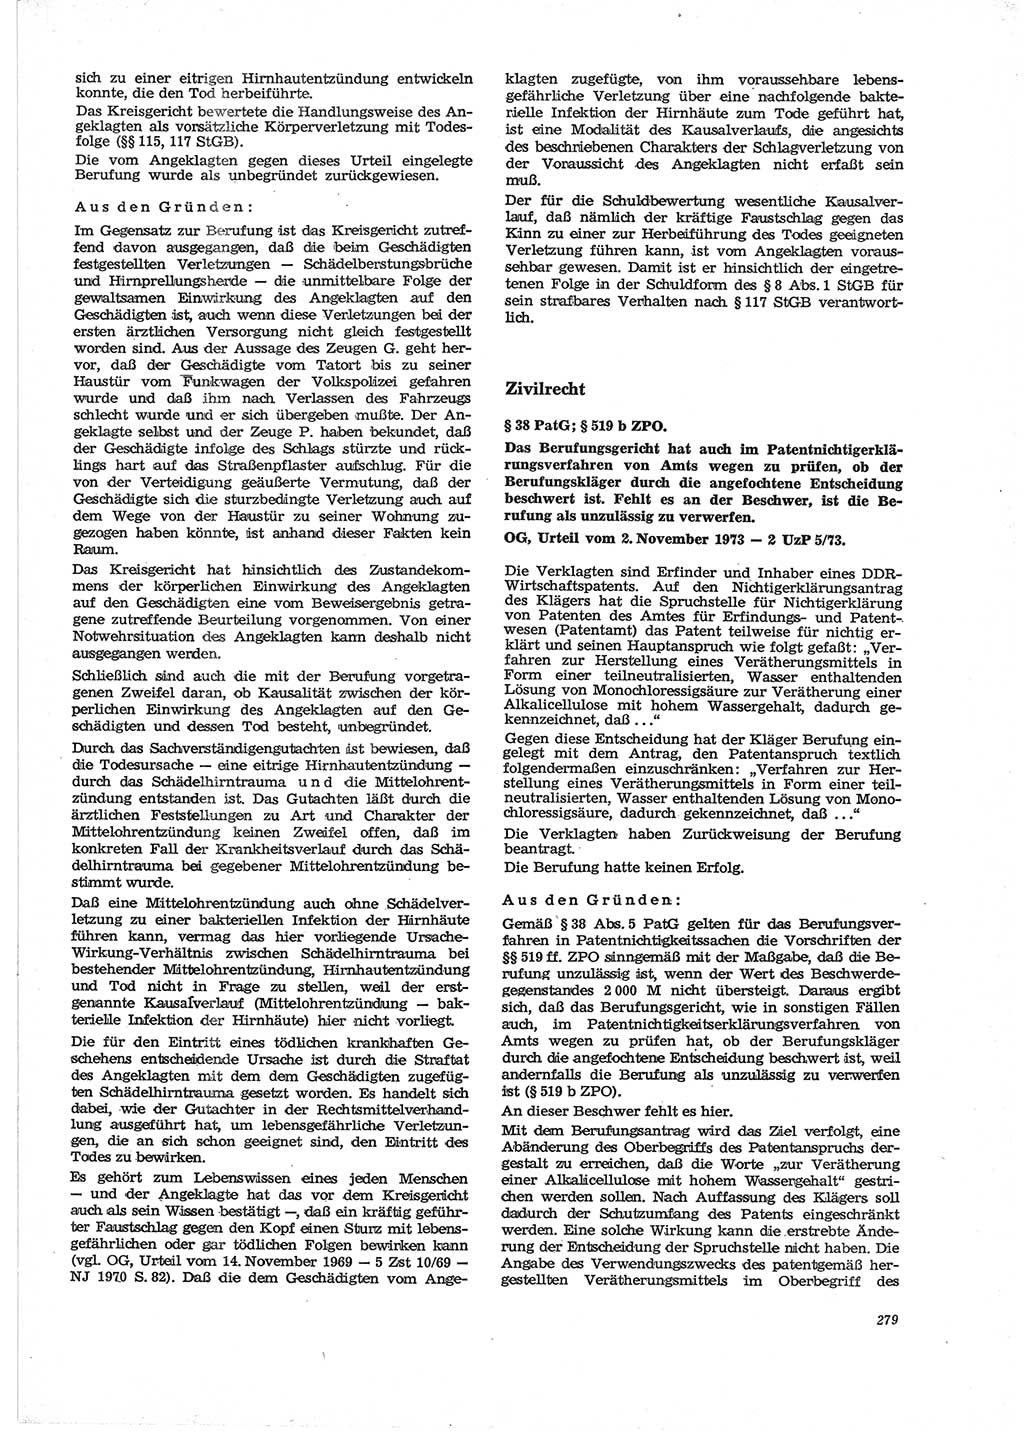 Neue Justiz (NJ), Zeitschrift für Recht und Rechtswissenschaft [Deutsche Demokratische Republik (DDR)], 28. Jahrgang 1974, Seite 279 (NJ DDR 1974, S. 279)